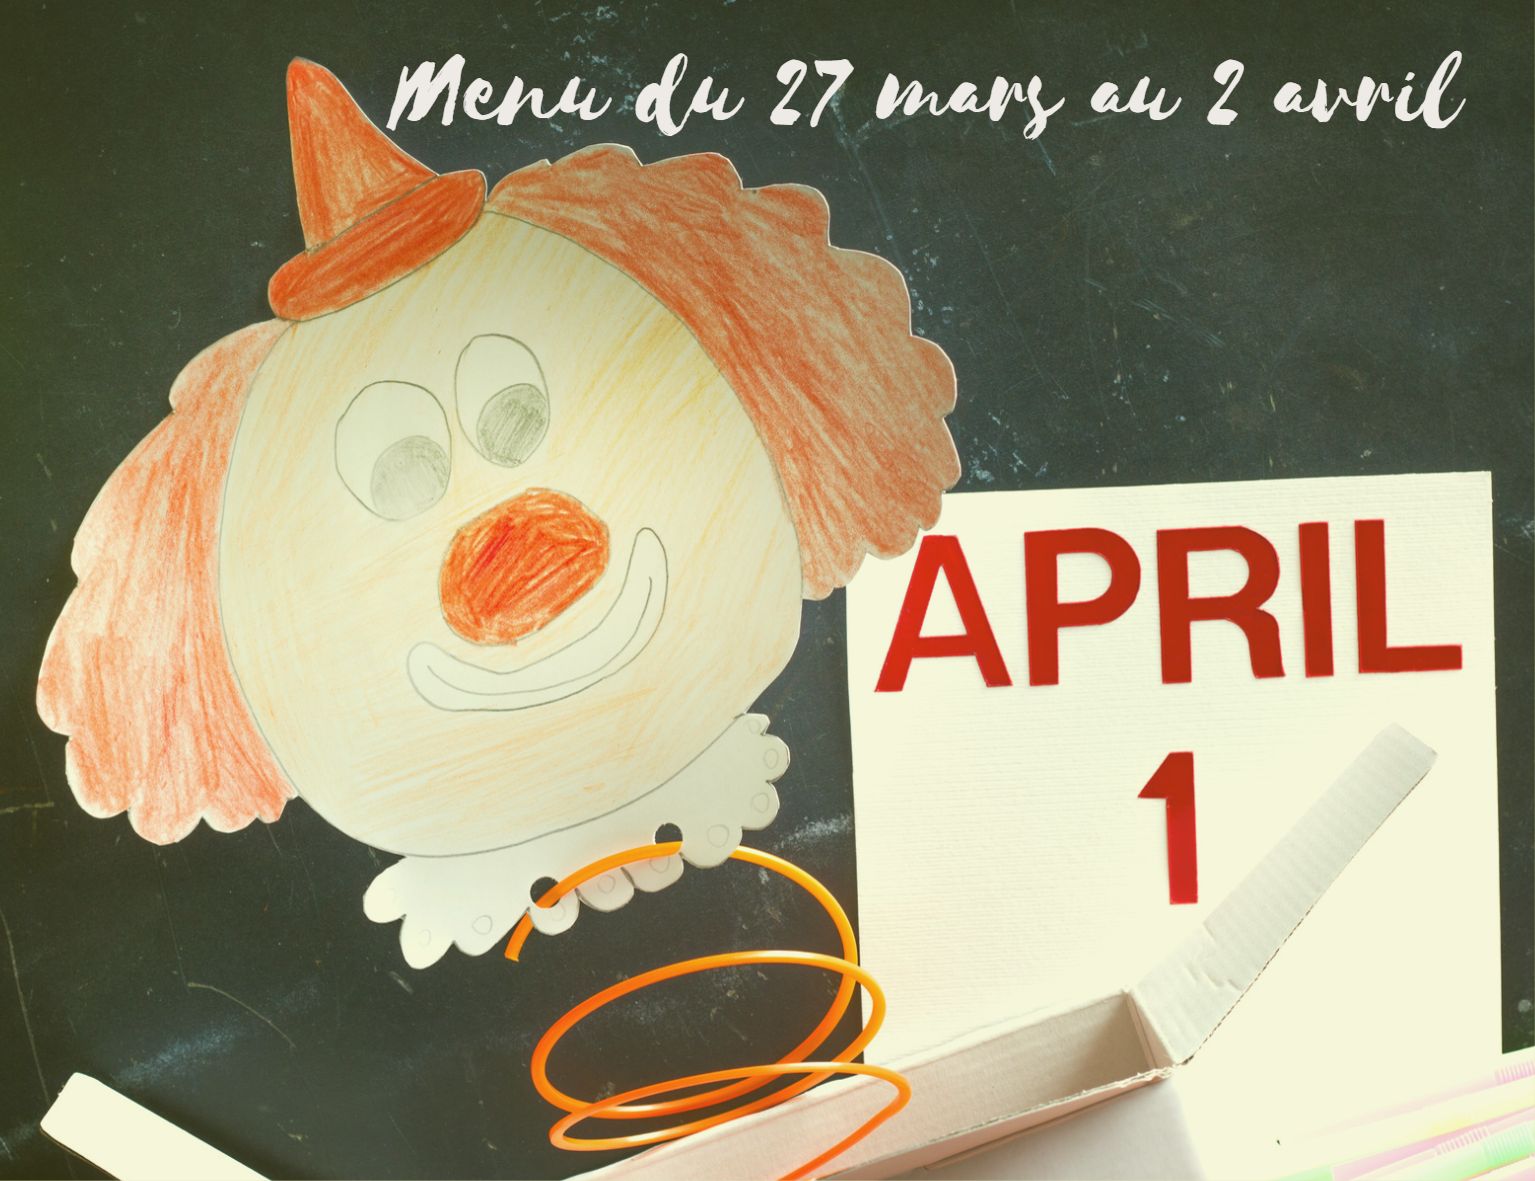 Célébrons le 1 avril avec nos menus du 27 mars au 2 avril